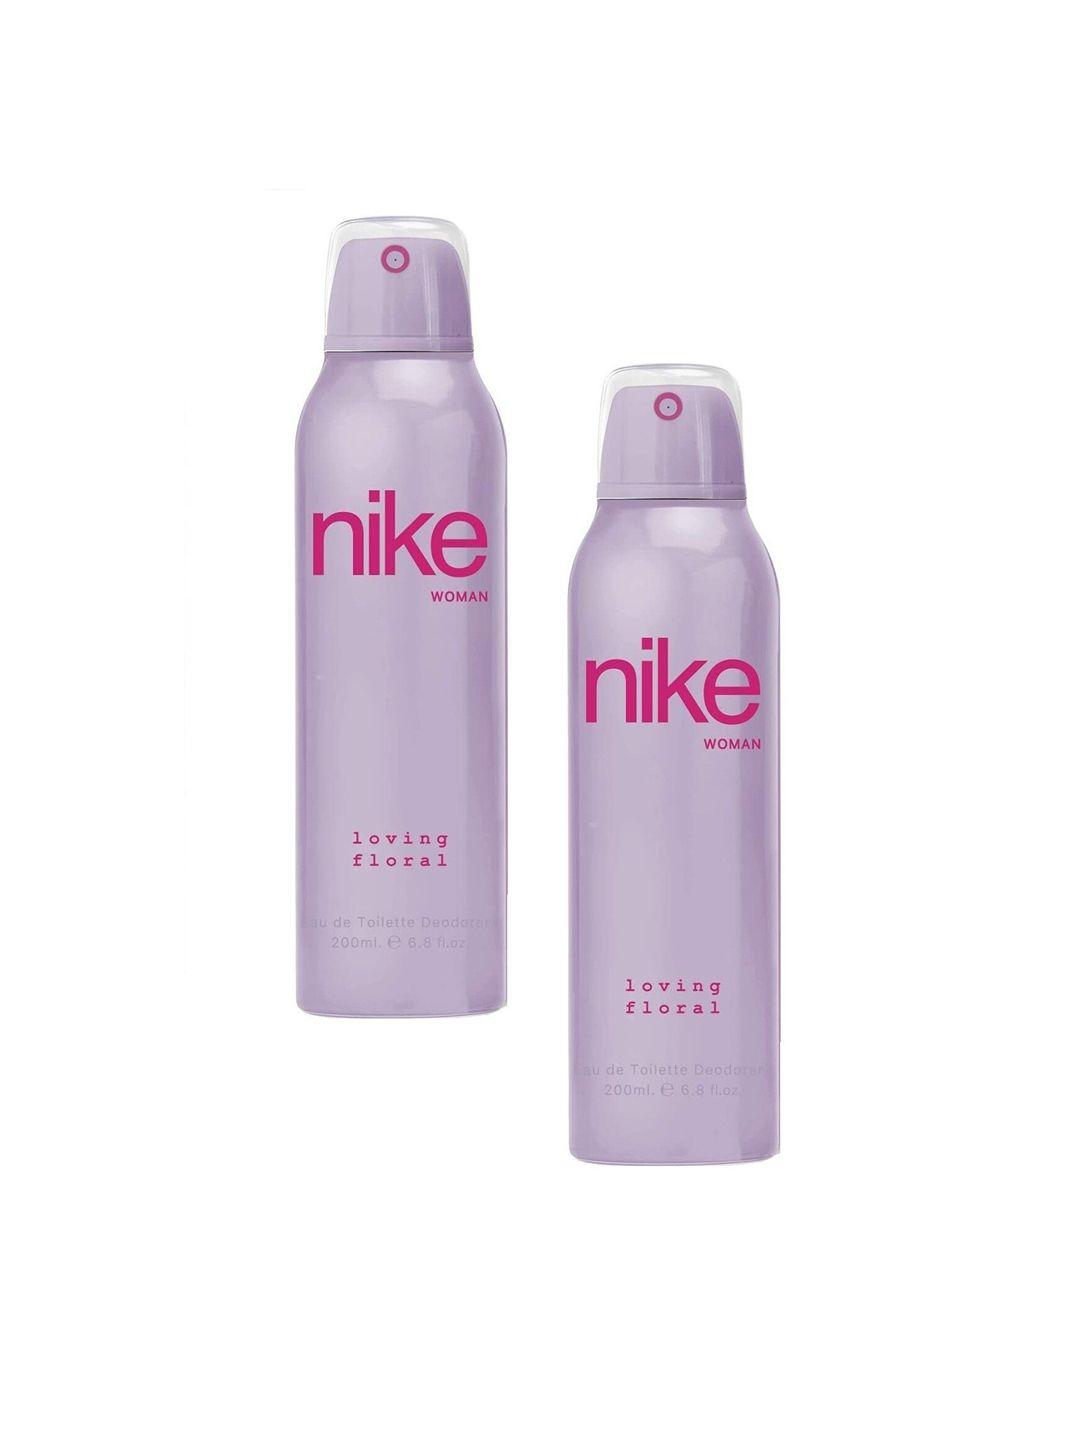 nike-pack-of-2-woman-loving-floral-deodorant--200ml-each